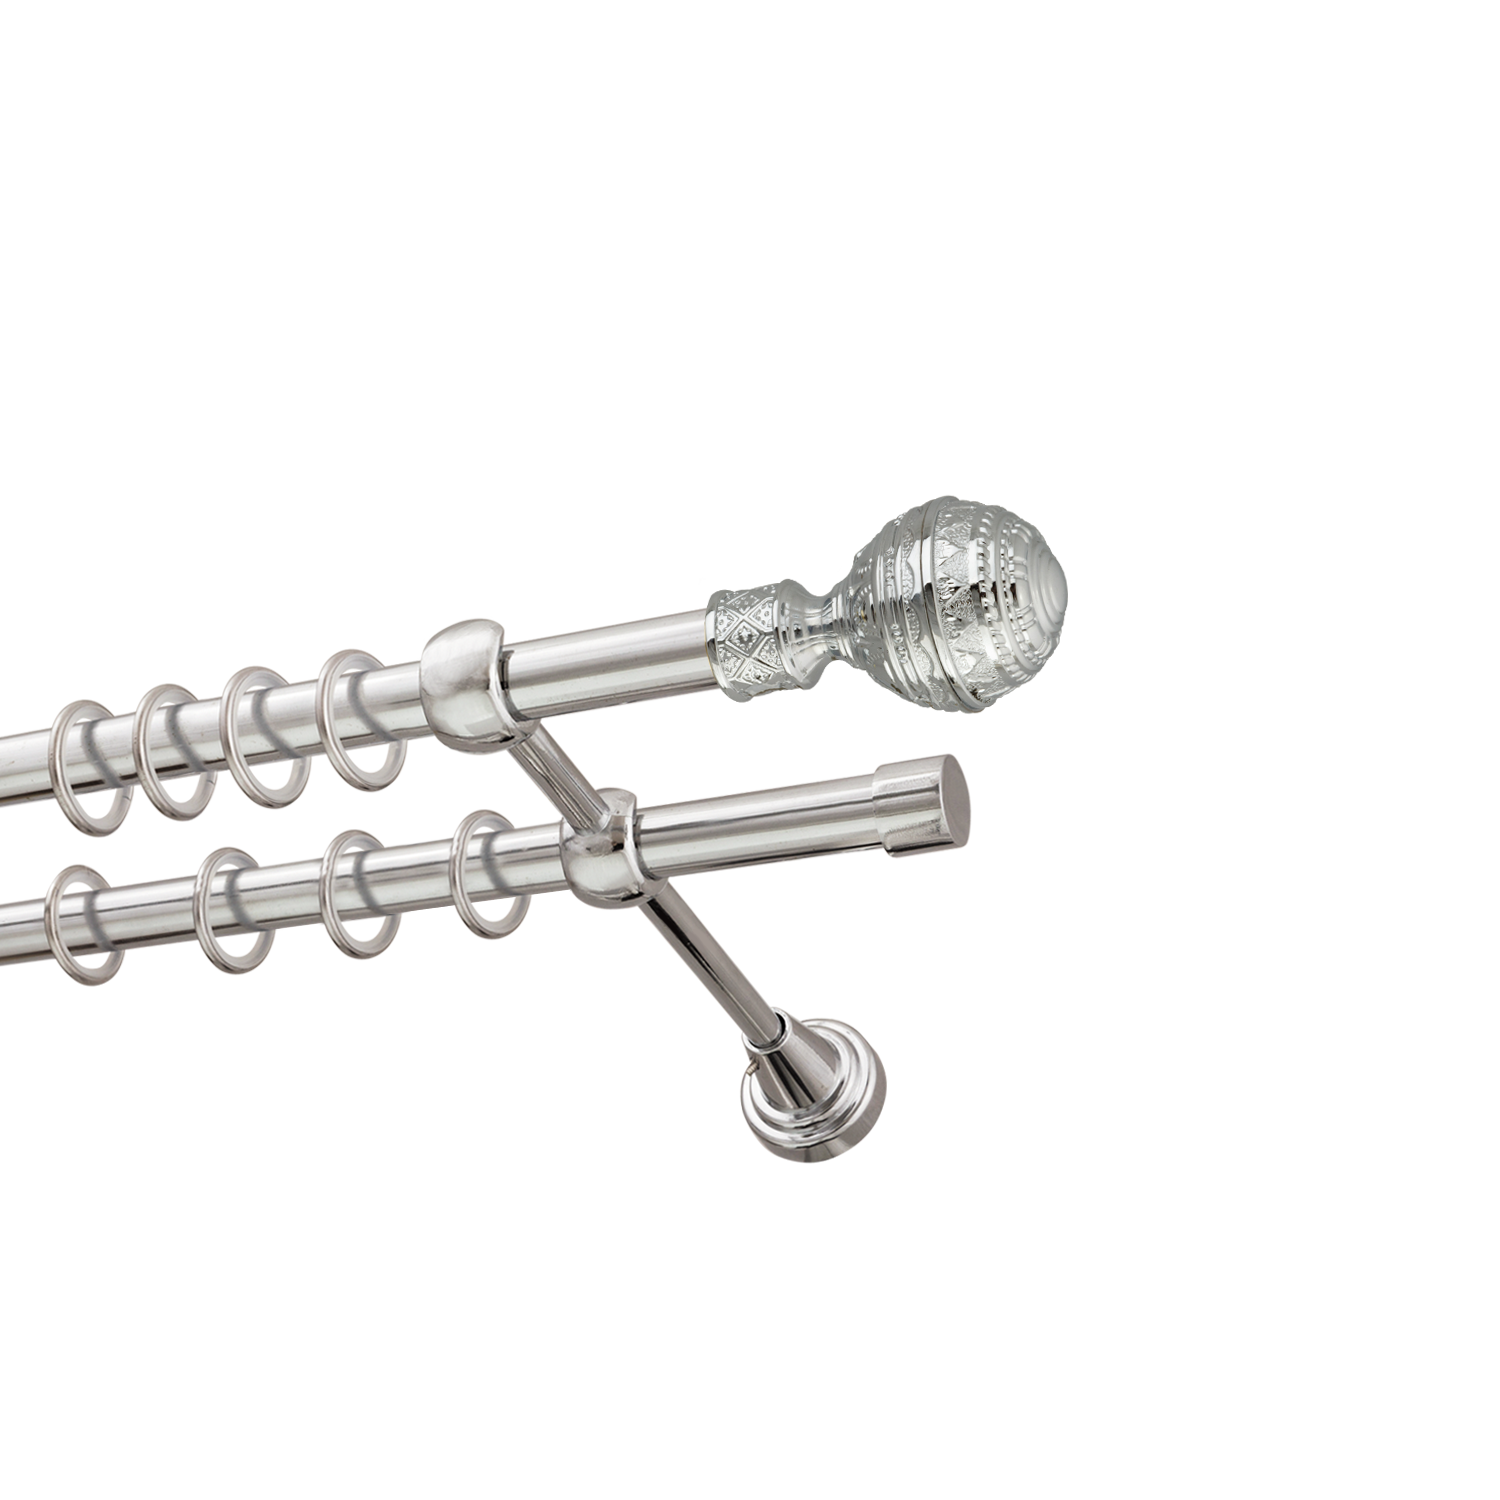 Металлический карниз для штор Роял, двухрядный 16/16 мм, серебро, гладкая штанга, длина 160 см